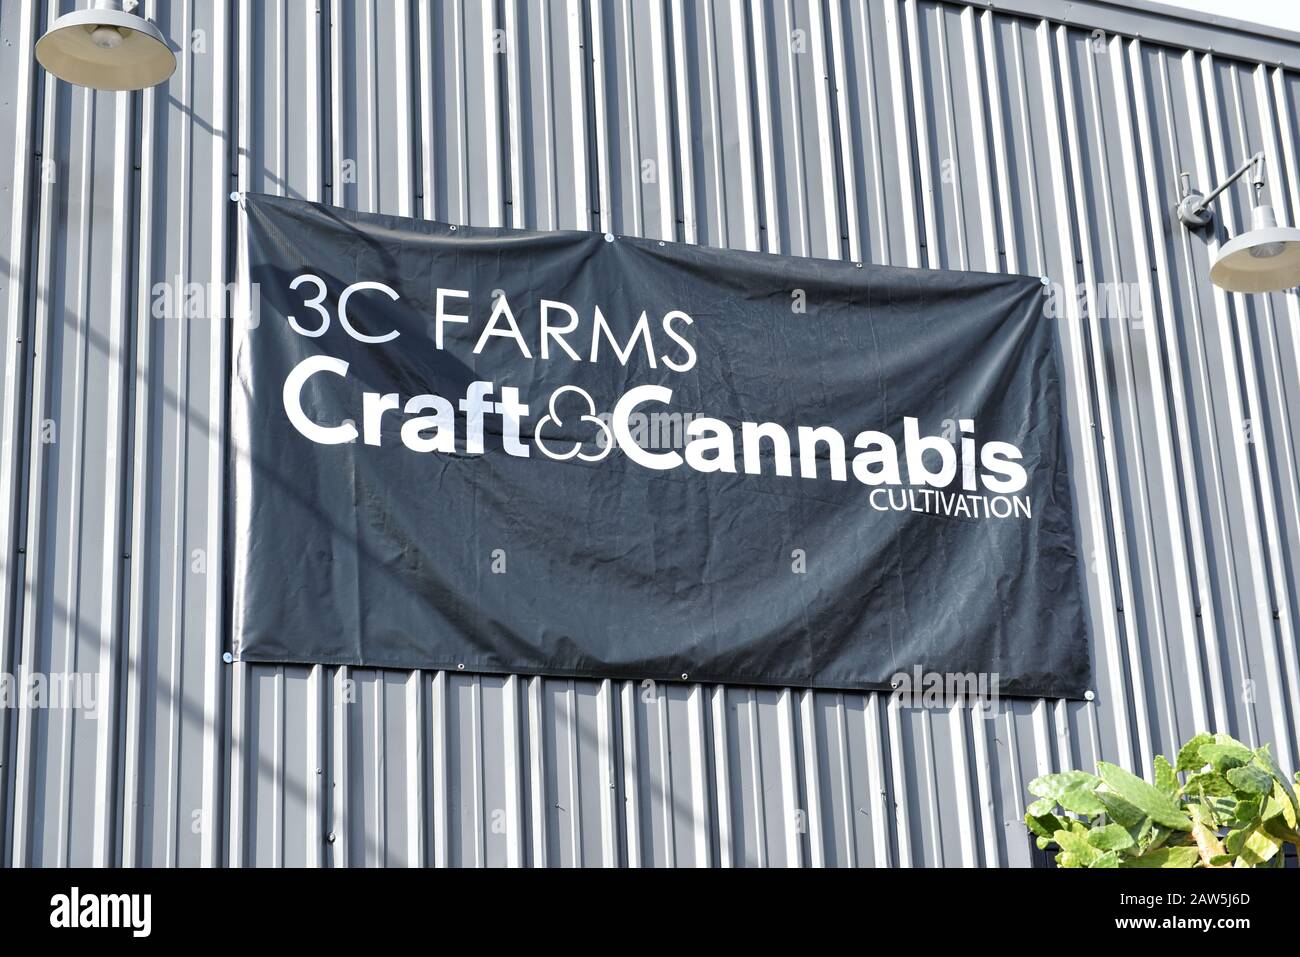 LOS ANGELES, CALIFORNIA - 05 FEB 2020: 3C Farms Craft and cannabis Cultivation sign, un cultivador de cannabis de gama alta que distribuye a su filial Foto de stock